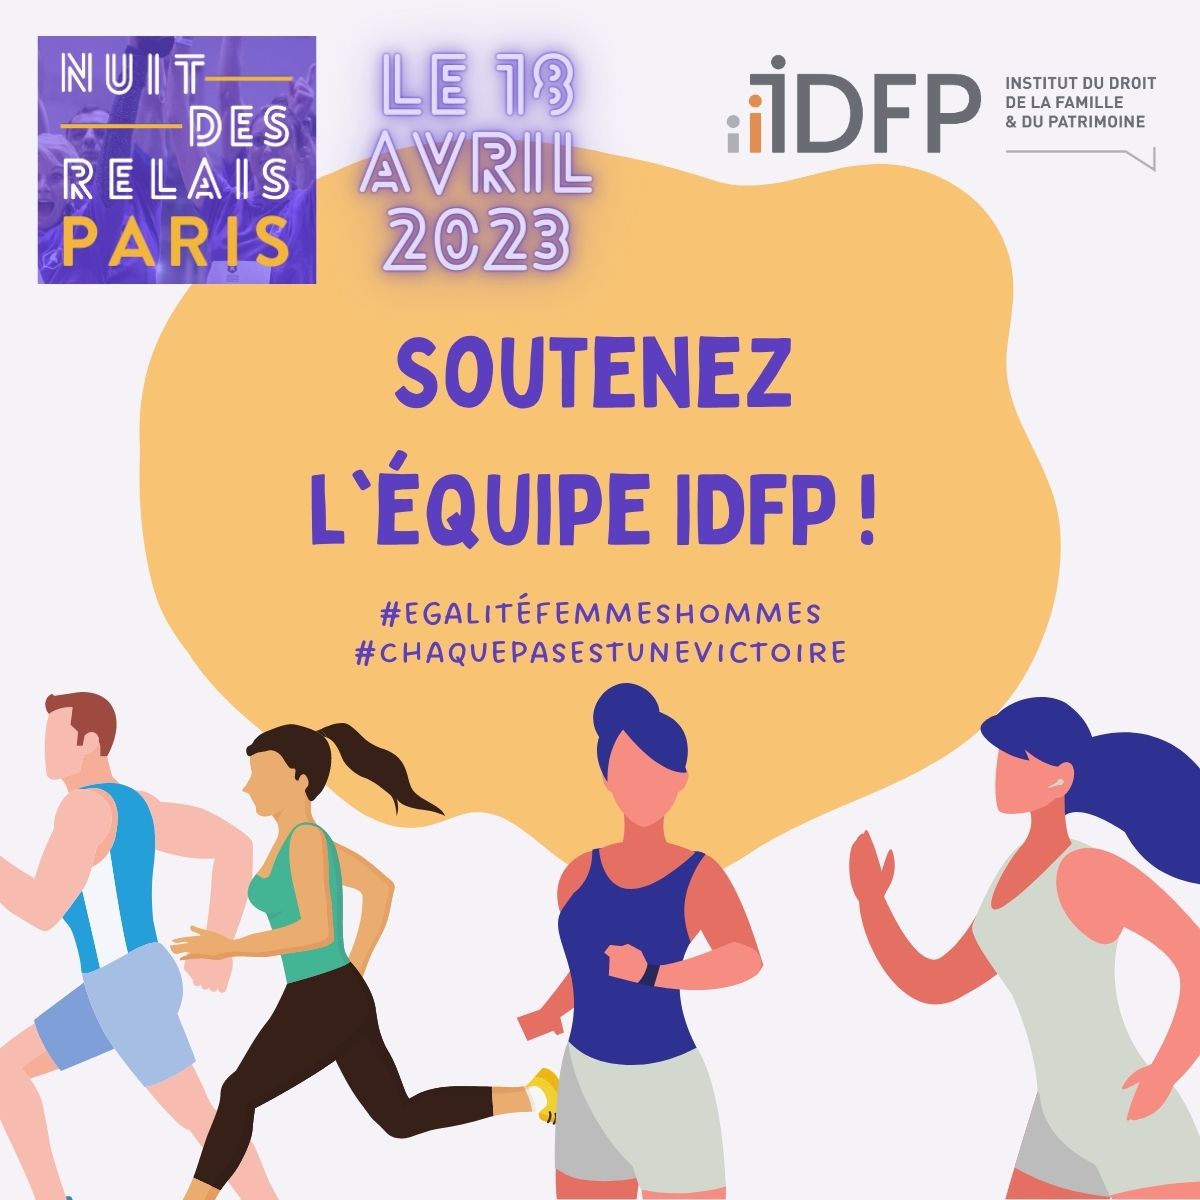 Le 18 avril, l’IDFP participera à la #5ème édition de la #NuitDesRelais organisée sur le Parvis de l'Hôtel de Ville de Paris !

nuitdesrelais.org

Nous courons par SOLIDARITÉ 💪

#NuitDesRelais #IDFP #chaquepasestunevictoire